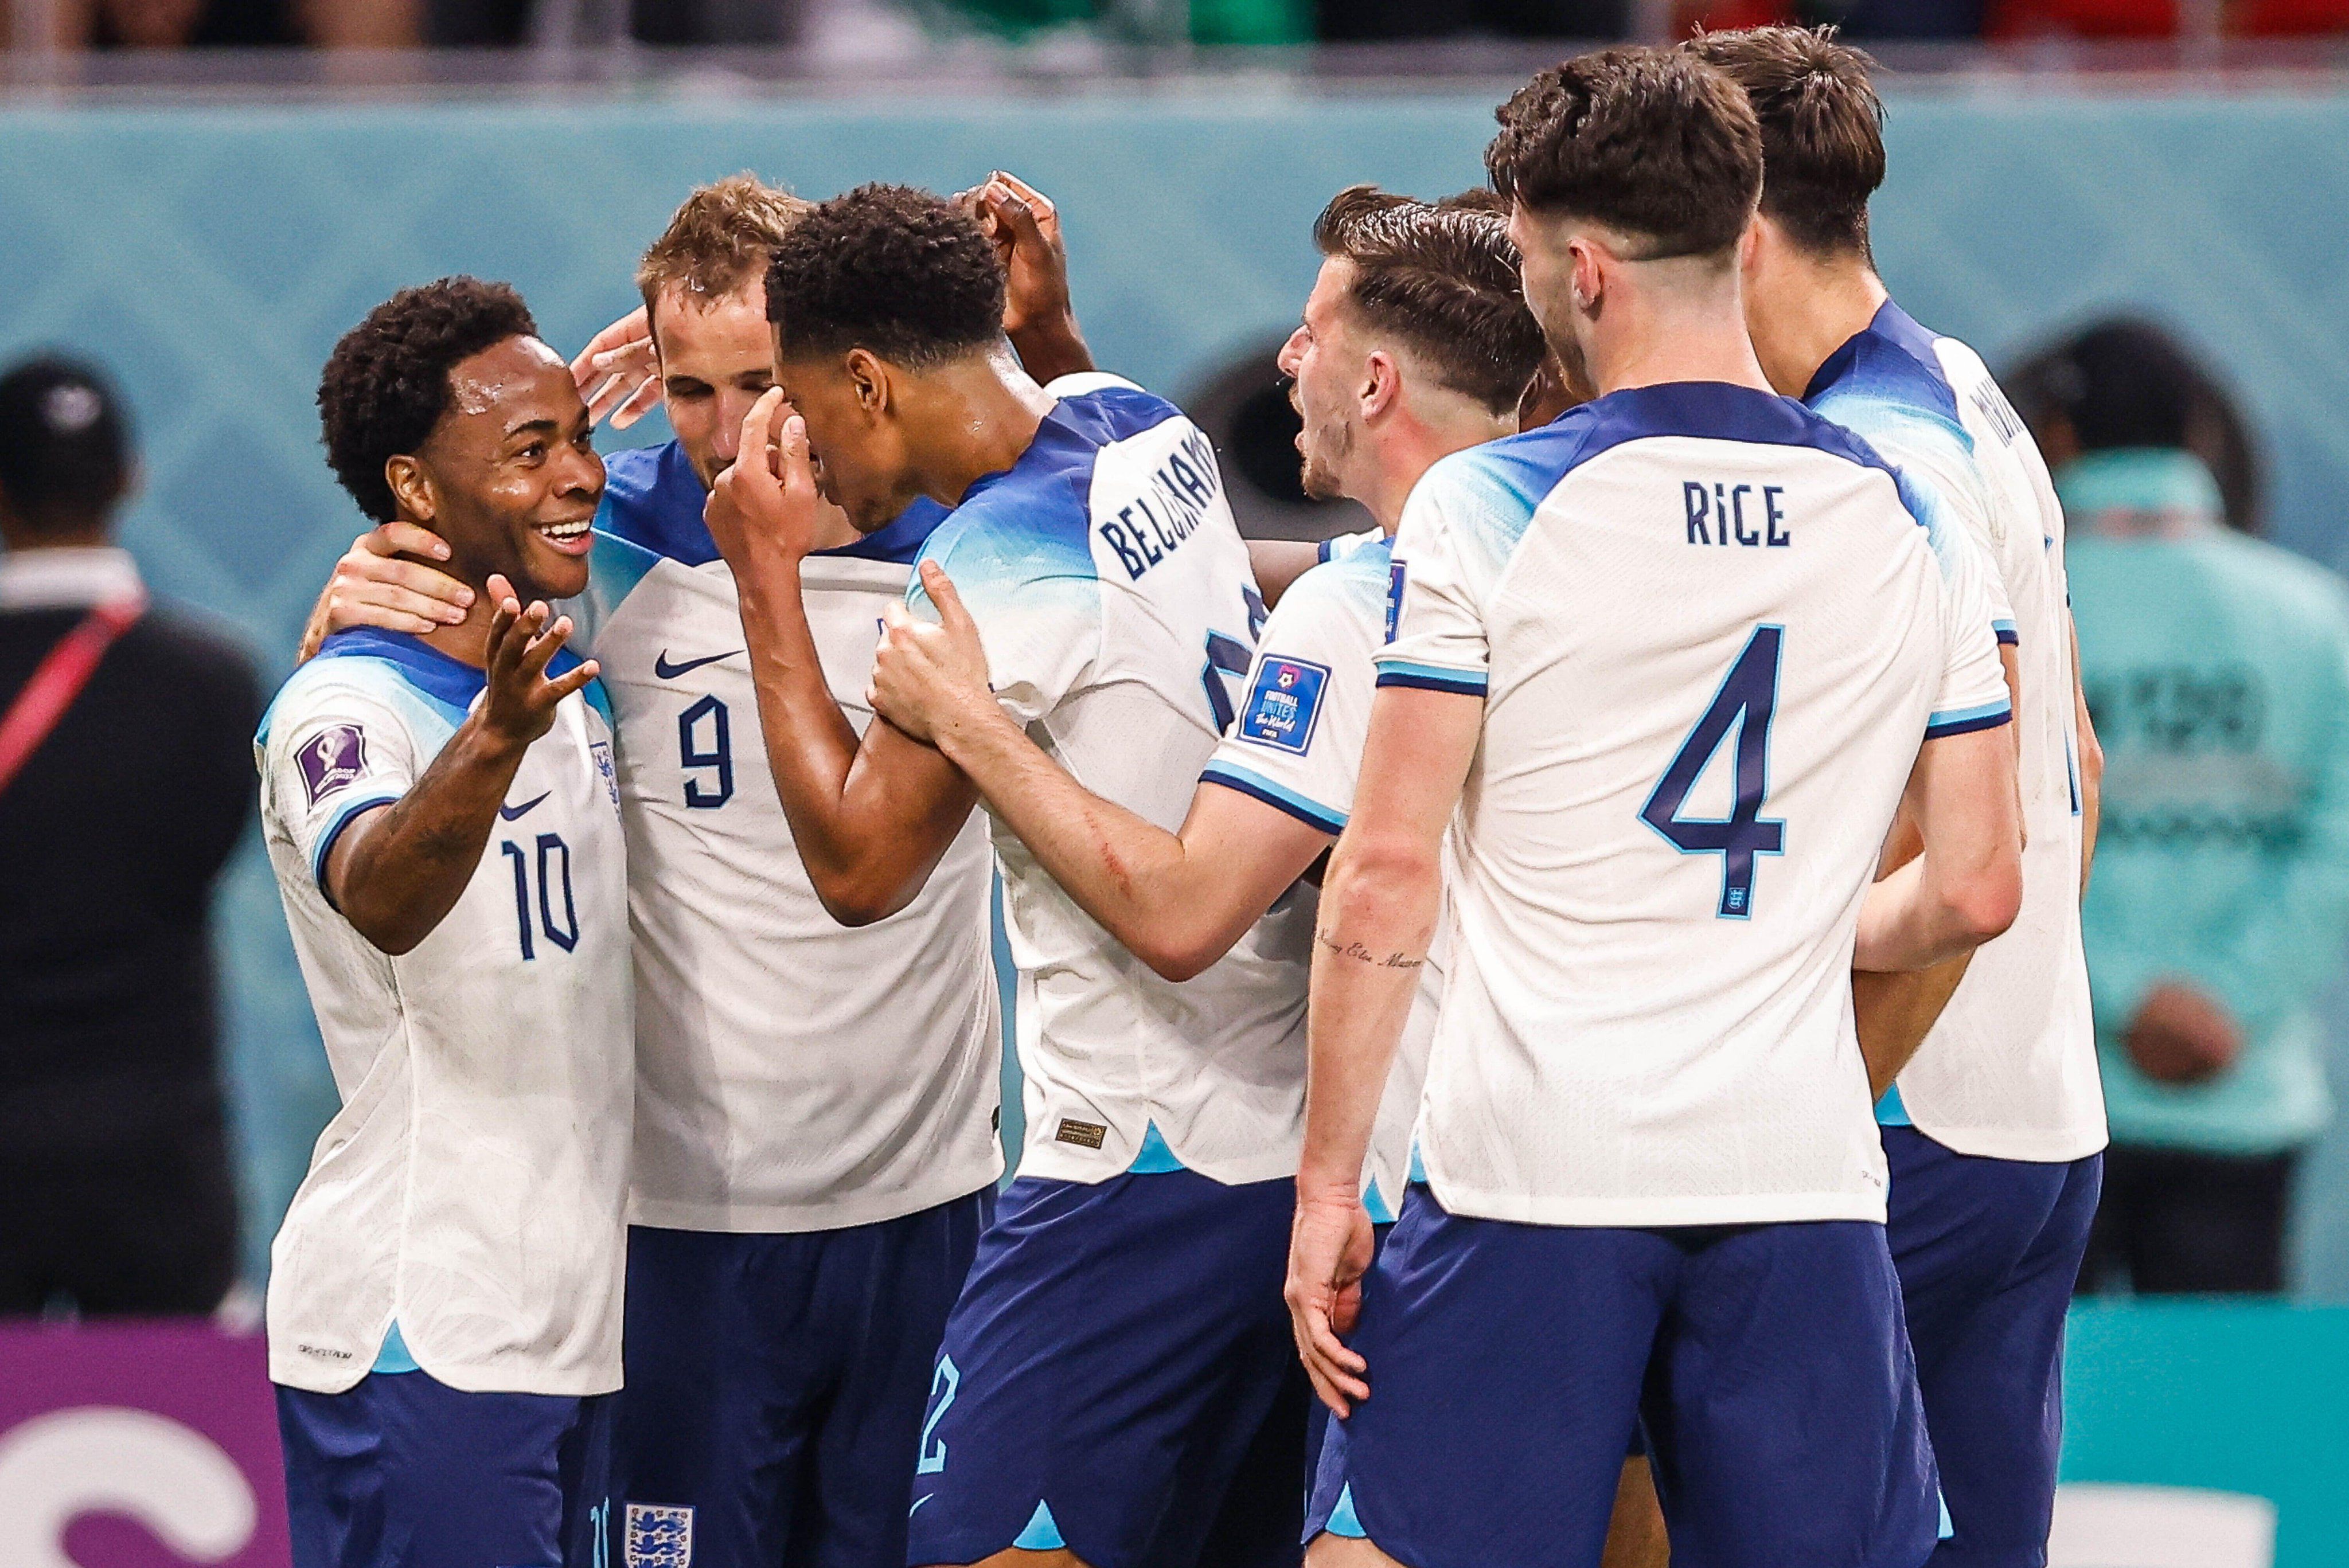 Англия – Иран – 6:2 по голам, 1:1 по политическим акциям и 27 добавленных минут